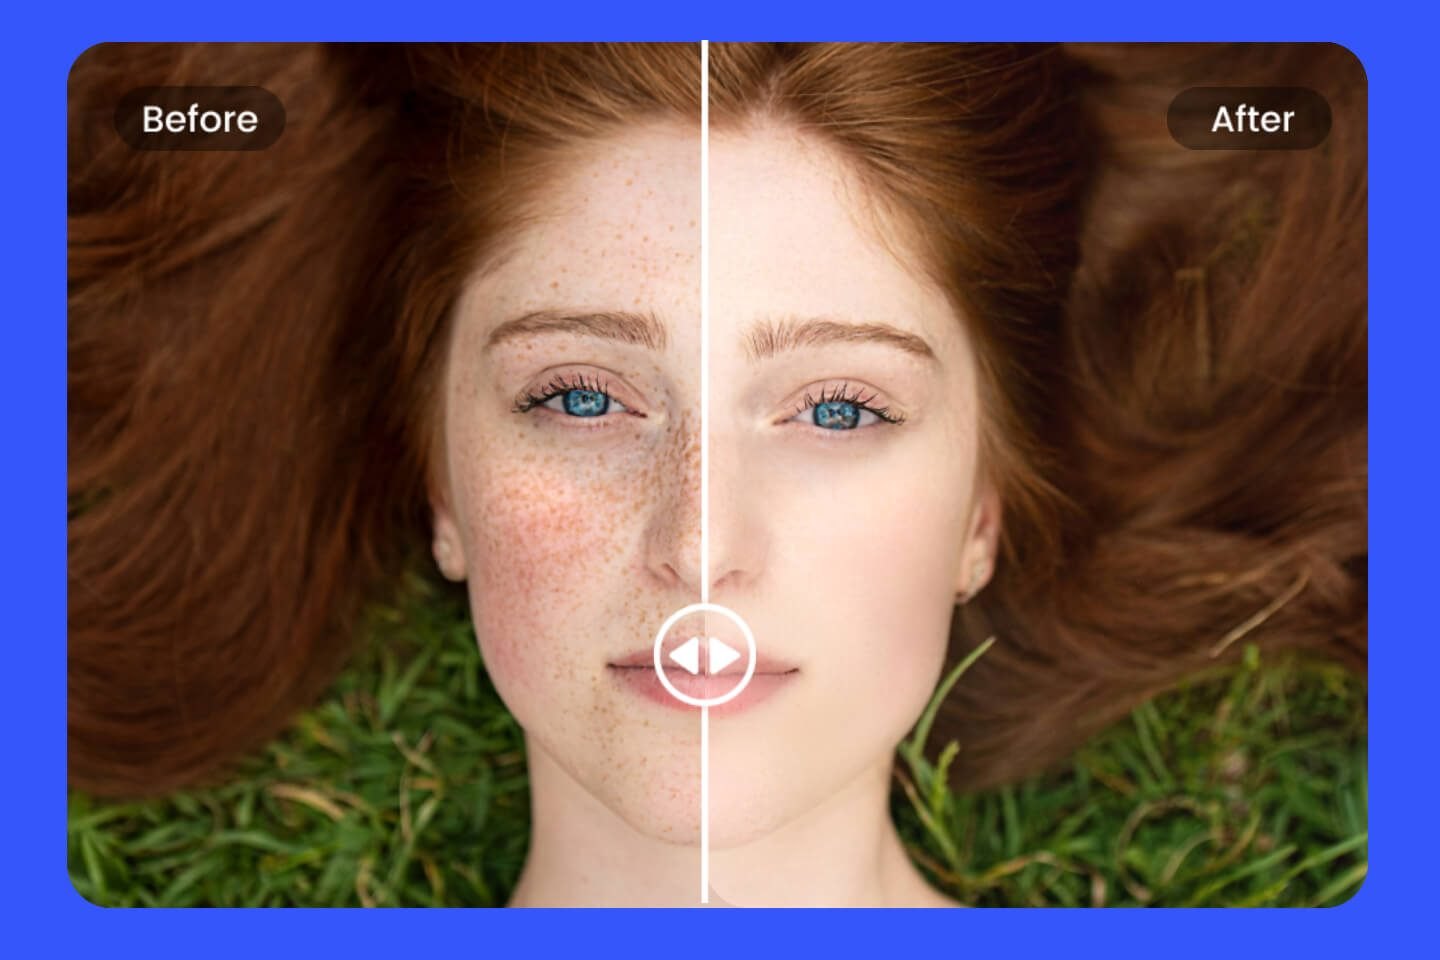 Aplicación que Elimina Imperfecciones Faciales de tus Fotos